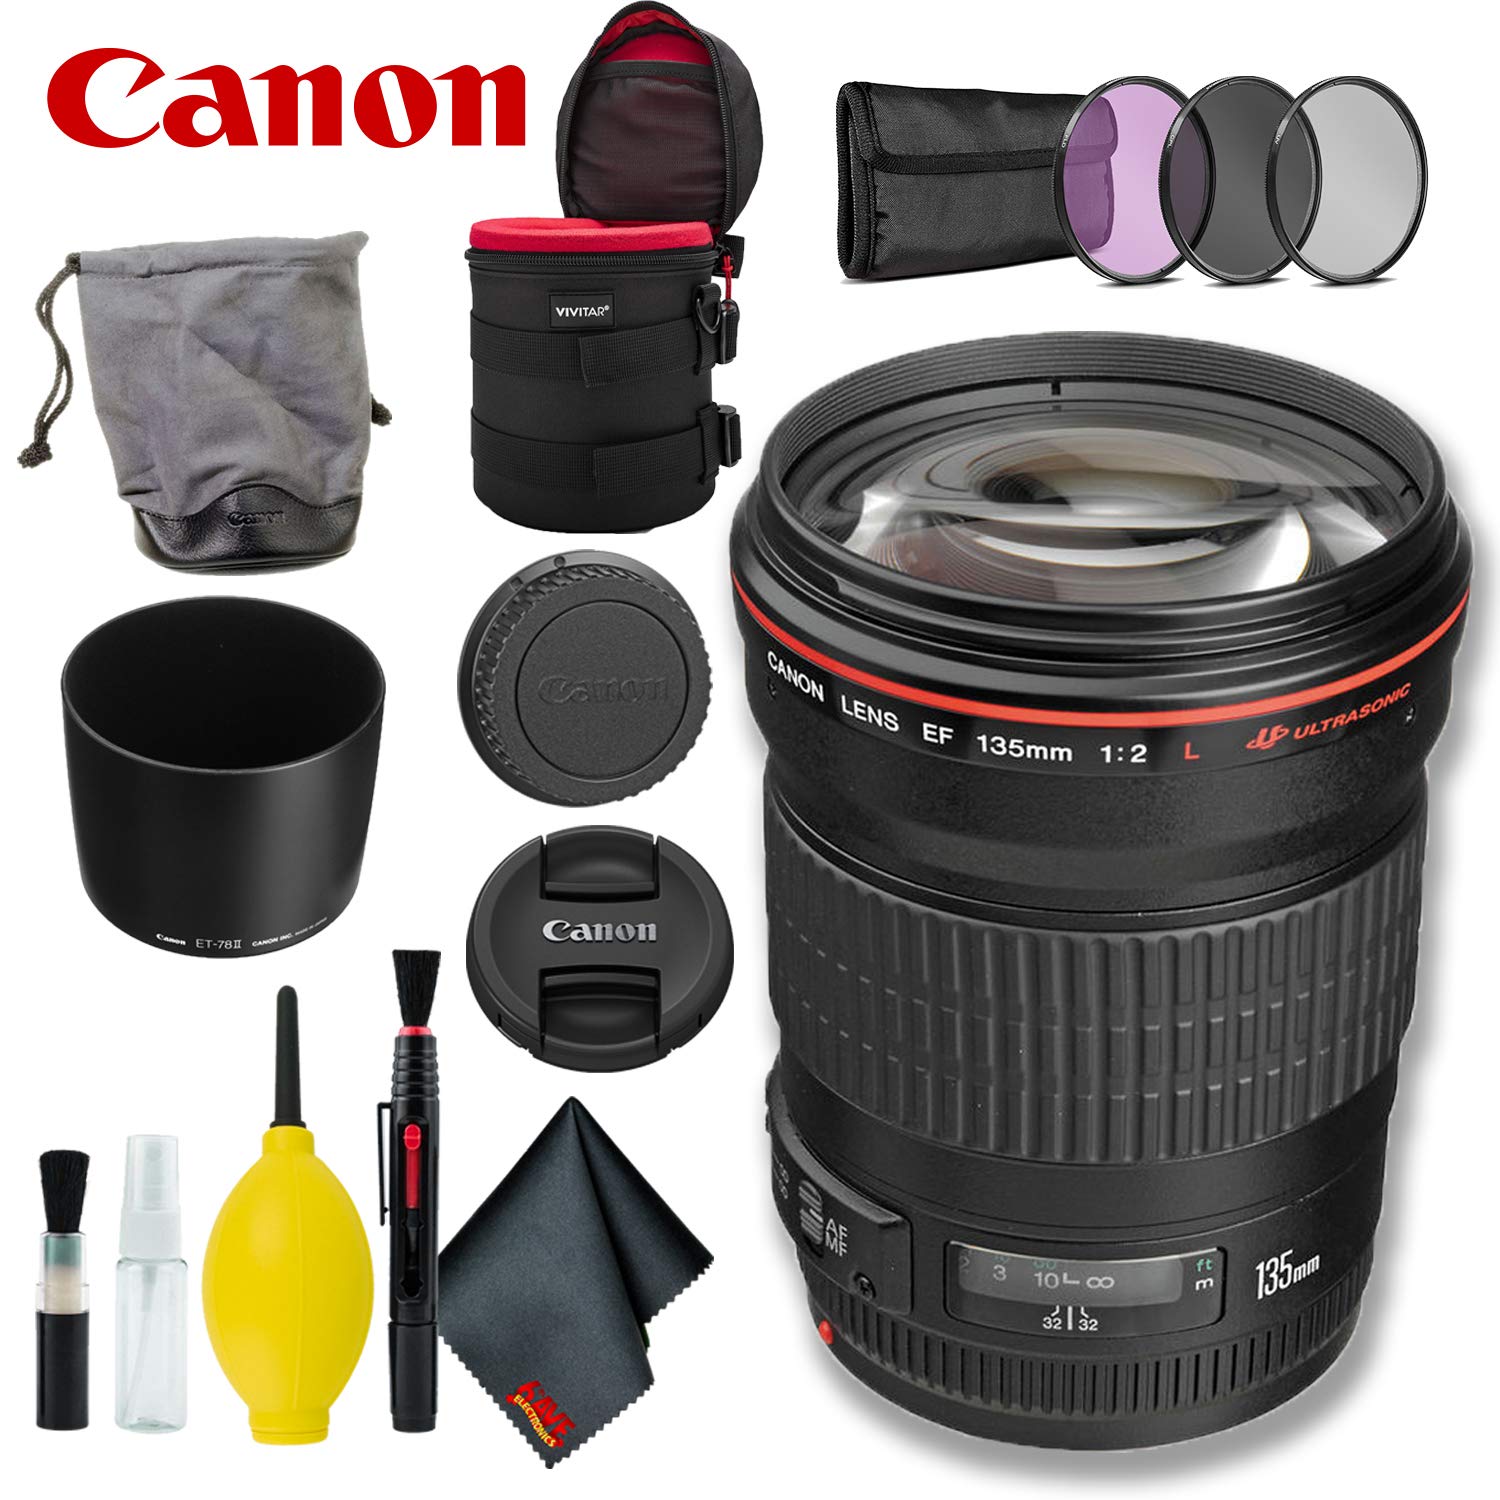 Canon EF 135mm f/2L USM Lens (International Model) w/Filter Kit + Lens Case Bundle